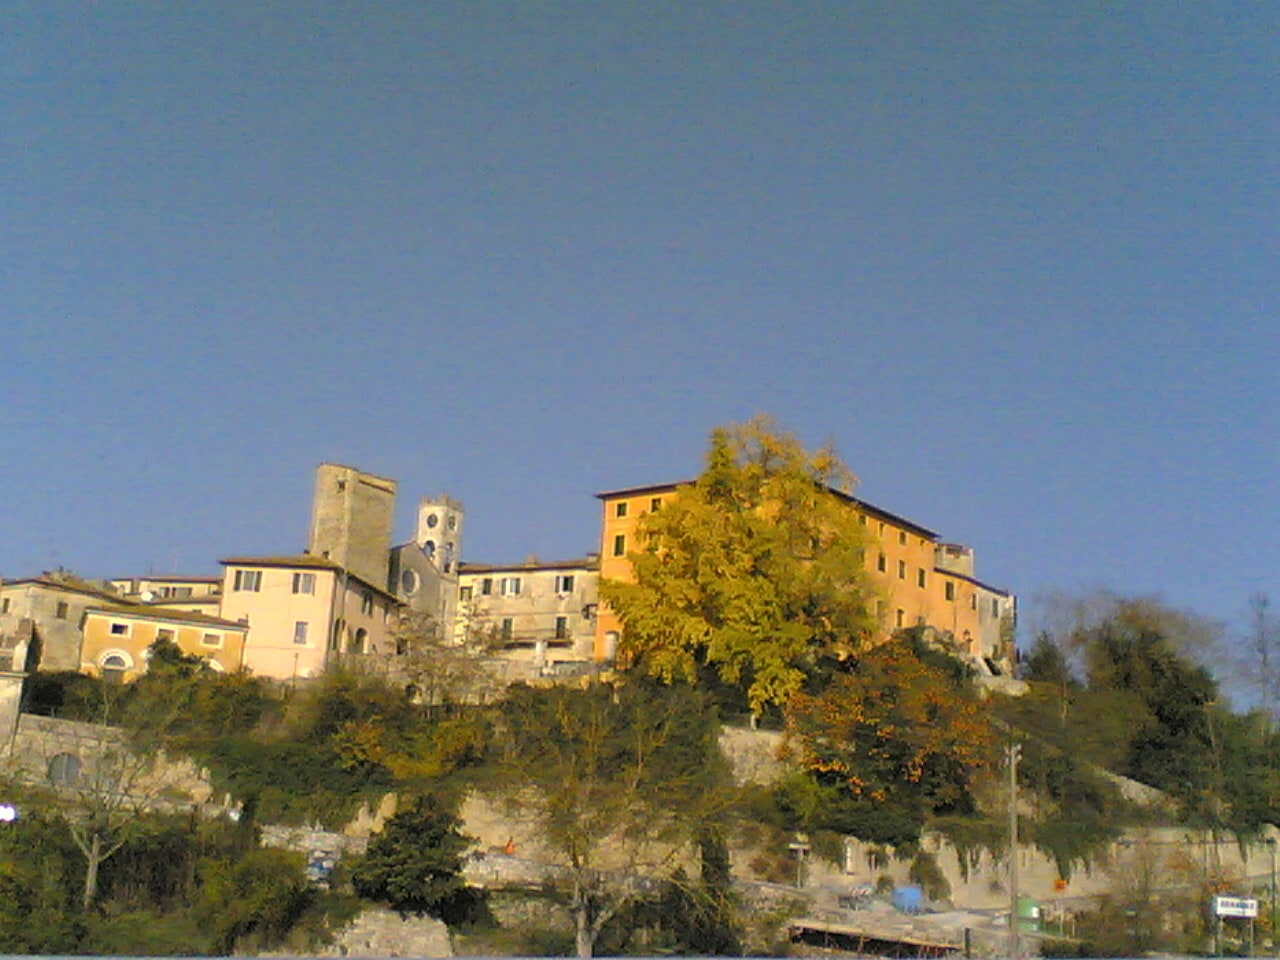 Rapolano Terme, Italy